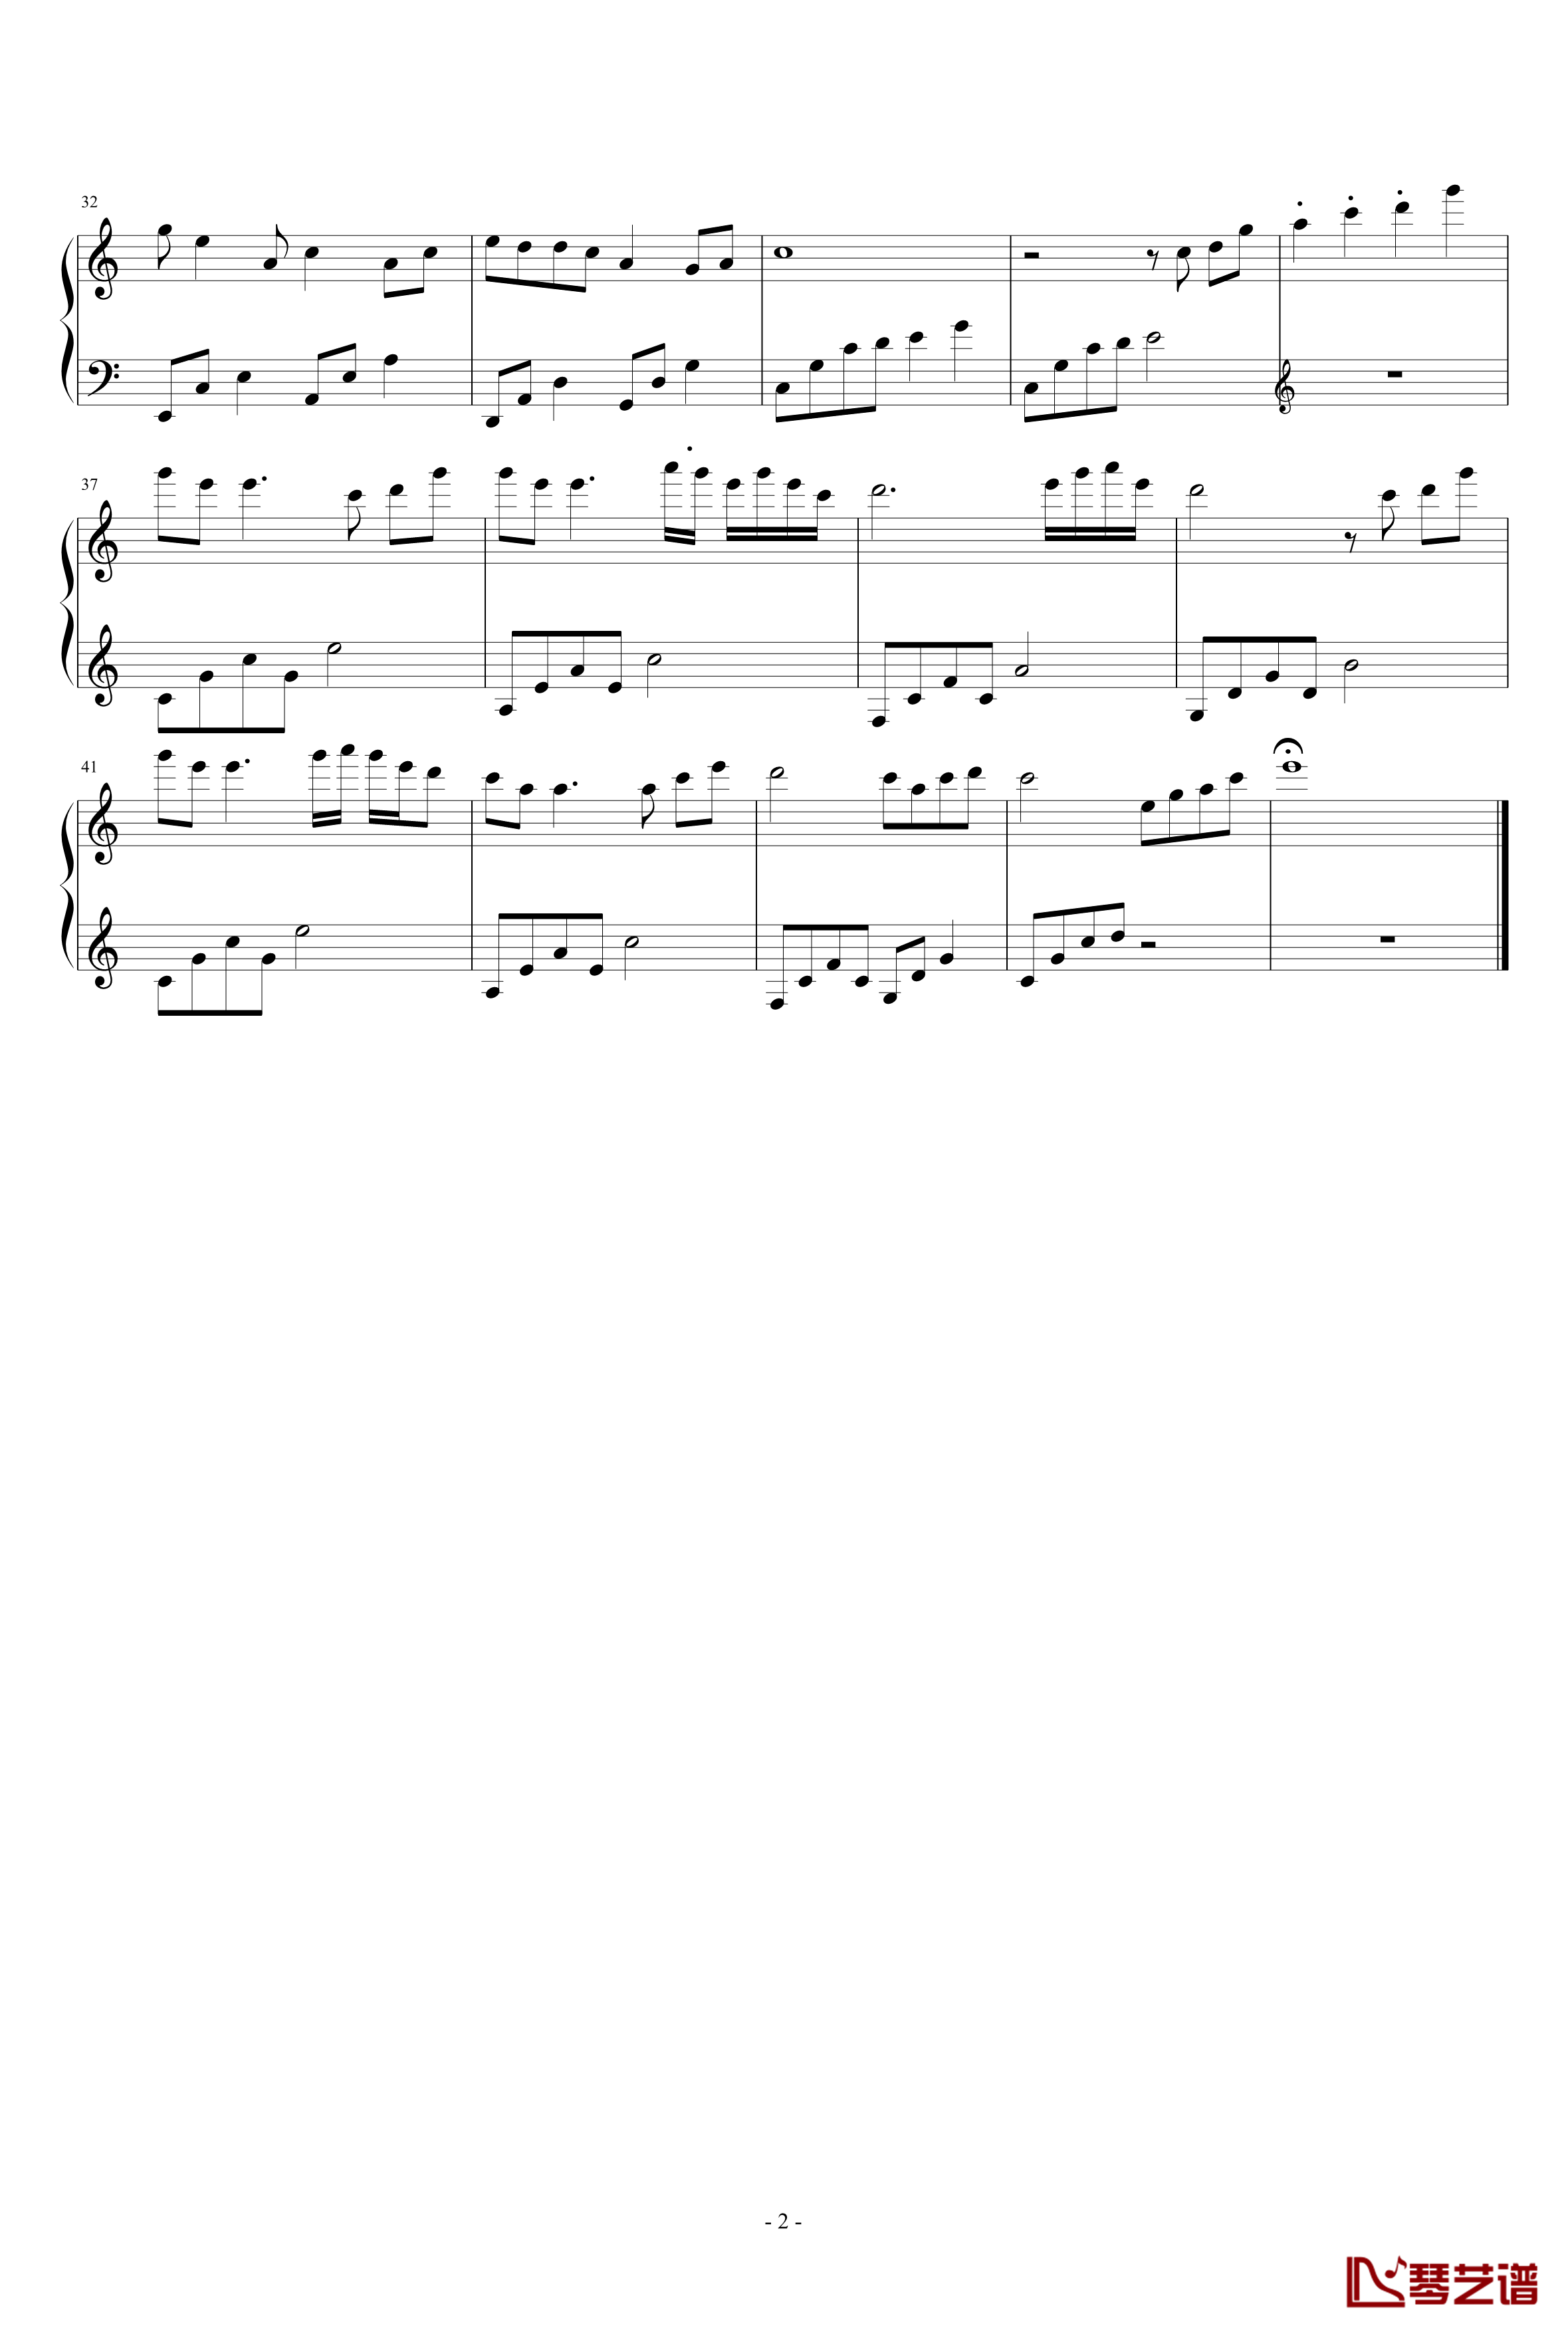 镜湖水月钢琴谱-完整版-eggming2